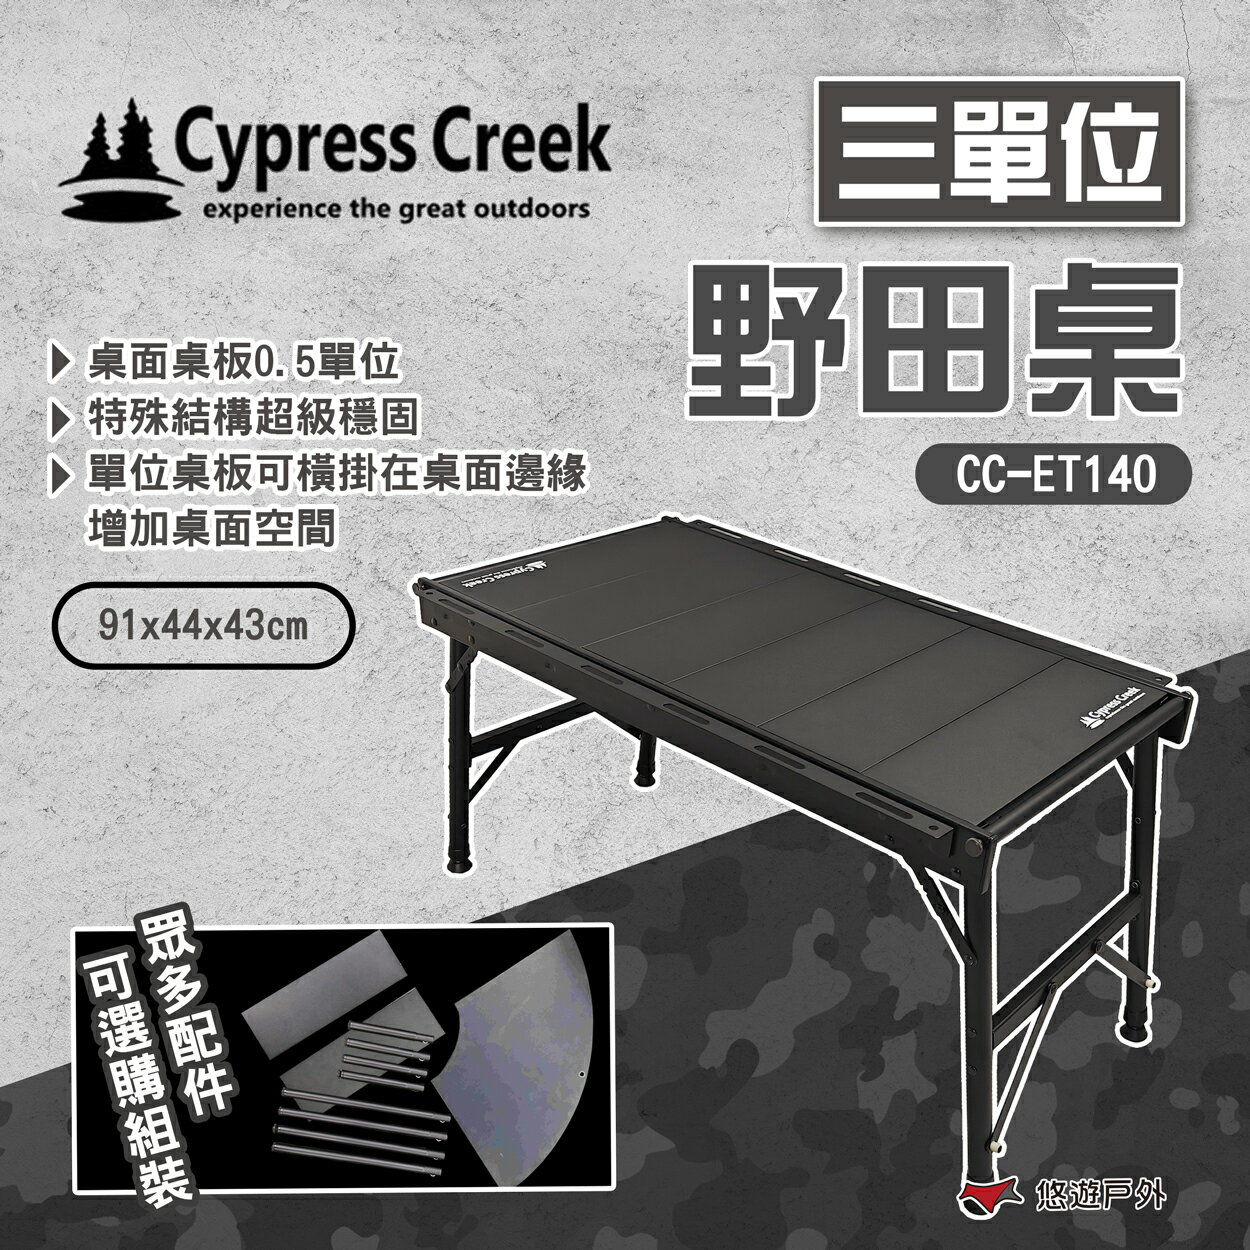 【Cypress Creek】賽普勒斯 三單位野田桌 CC-ET140 鋁合金桌 摺疊桌 露營 戶外 悠遊戶外